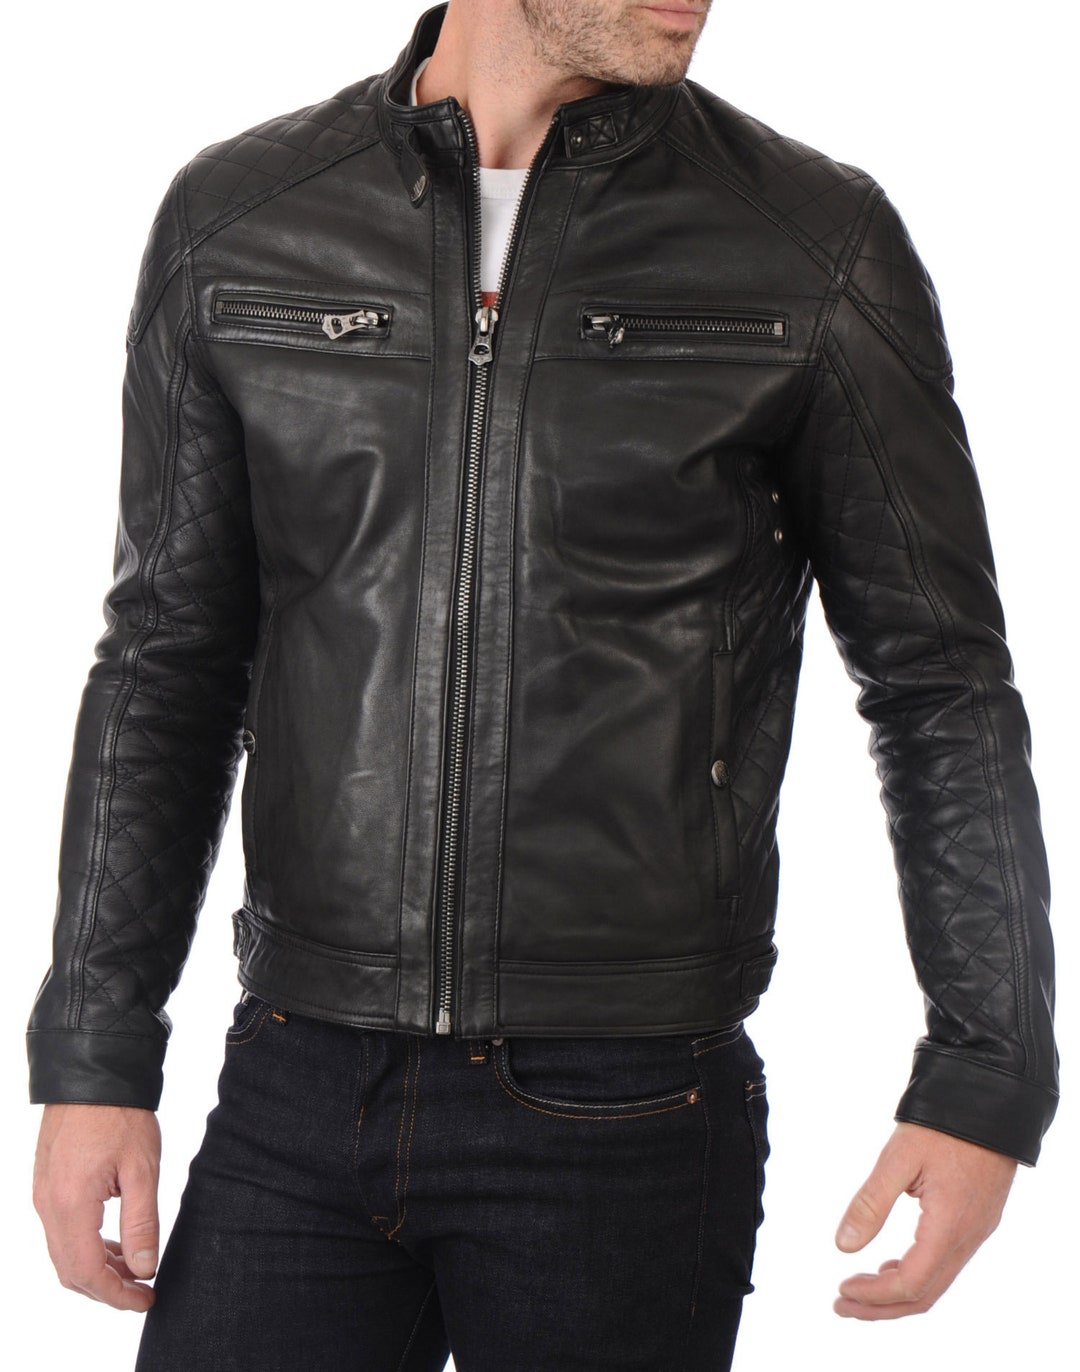 High Glamor Men's Leather Jacket Stylish Handmade Motorcycle Bomber ...